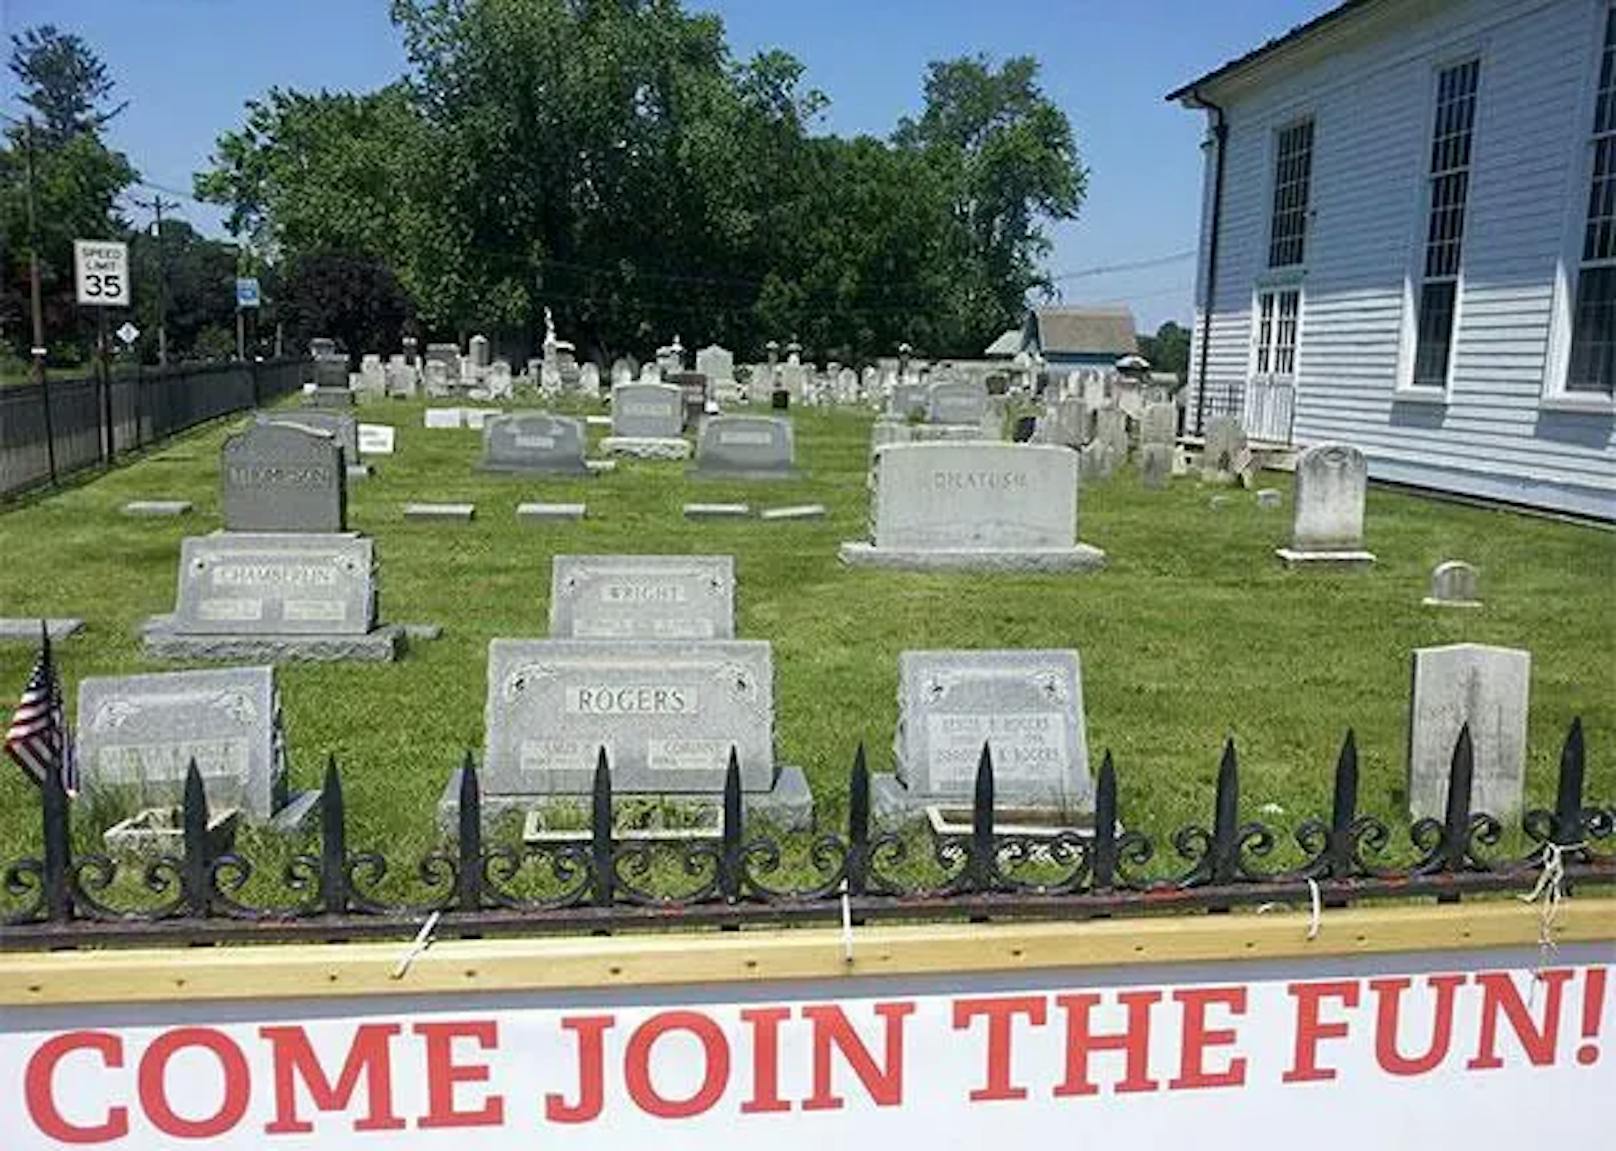 Vielleicht war es die einzige freie Fläche, doch auch diese Werbung für ein US-Bibelcamp scheint unvorteilhaft platziert. "Come join the fun" (etwa: Komm und genieß' den Spaß), heißt es direkt neben dem örtlichen Friedhof.